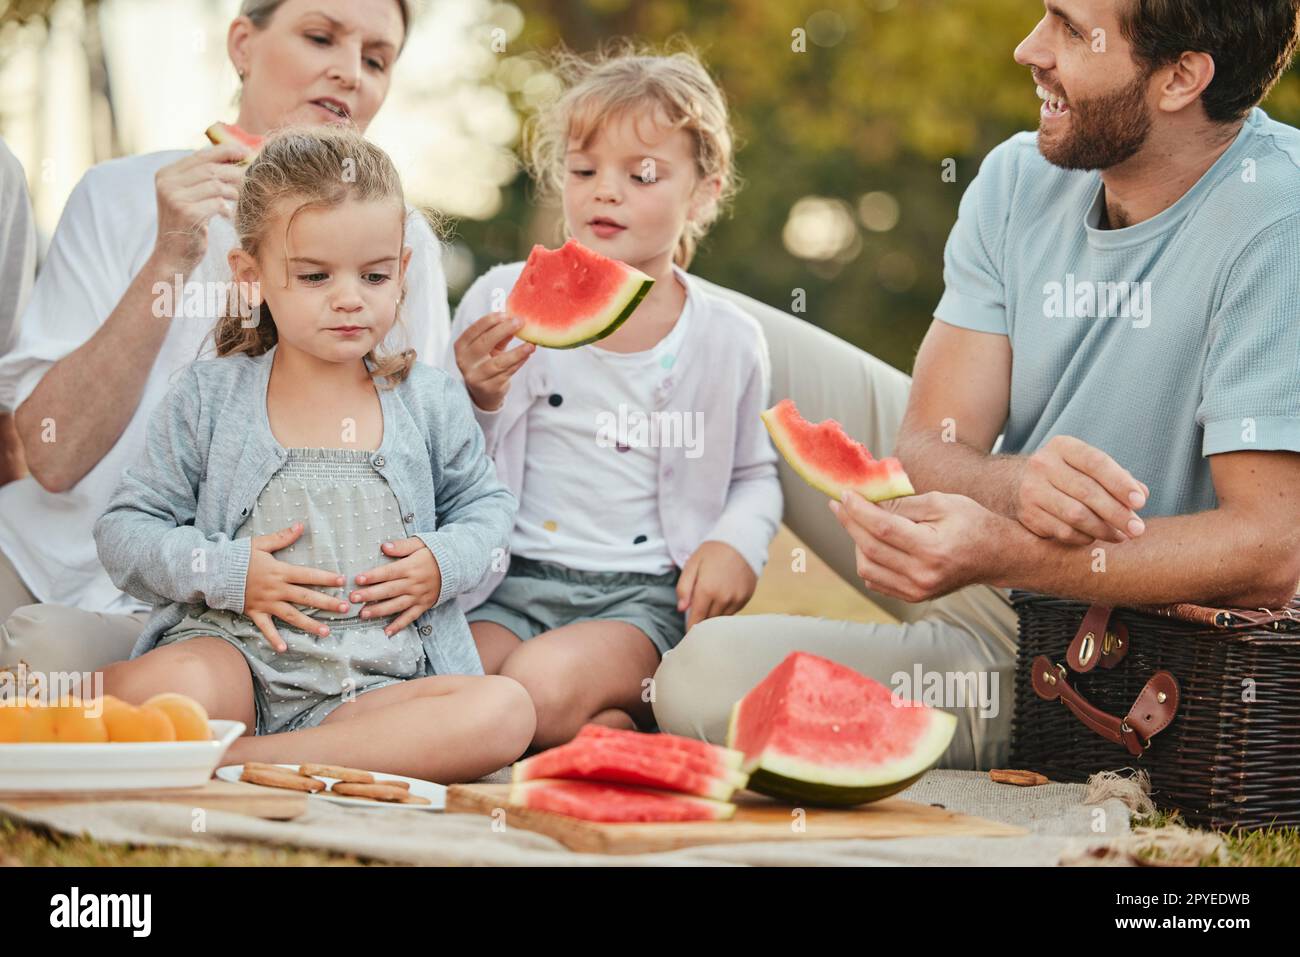 Park, Picknick und Paar mit Kindern und Obst auf der Decke im Garten für einen schönen Sommer mit der Familie. Natur, Liebe und Entspannung Mittagessen auf dem Rasen mit Eltern und Kindern mit Lächeln im Urlaub. Stockfoto